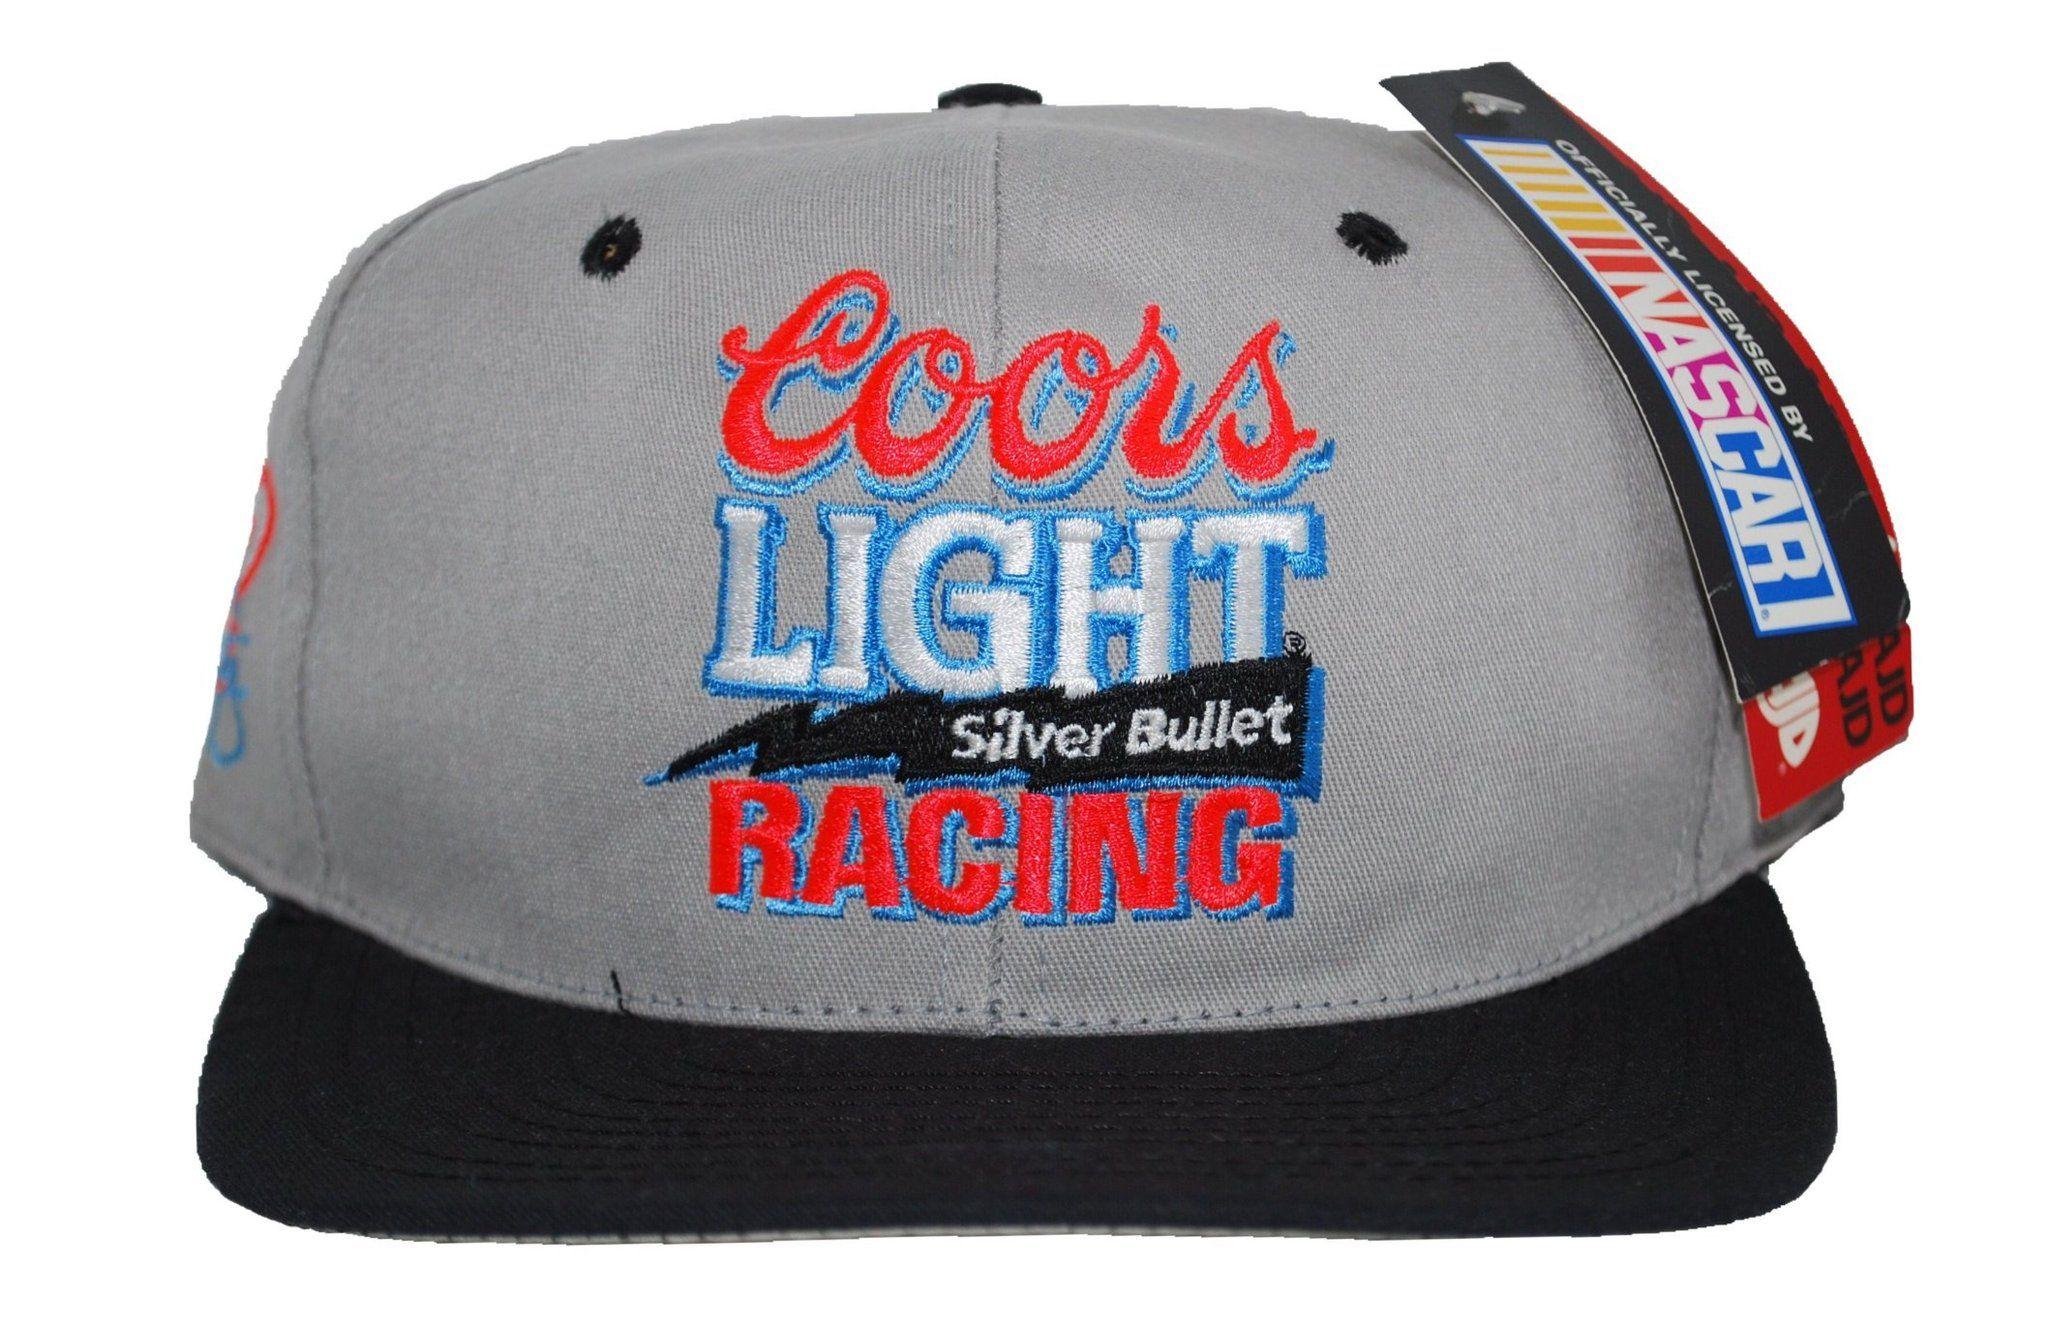 Coors Light Racing Logo - Coors Light Racing – Mixed Bag Hats